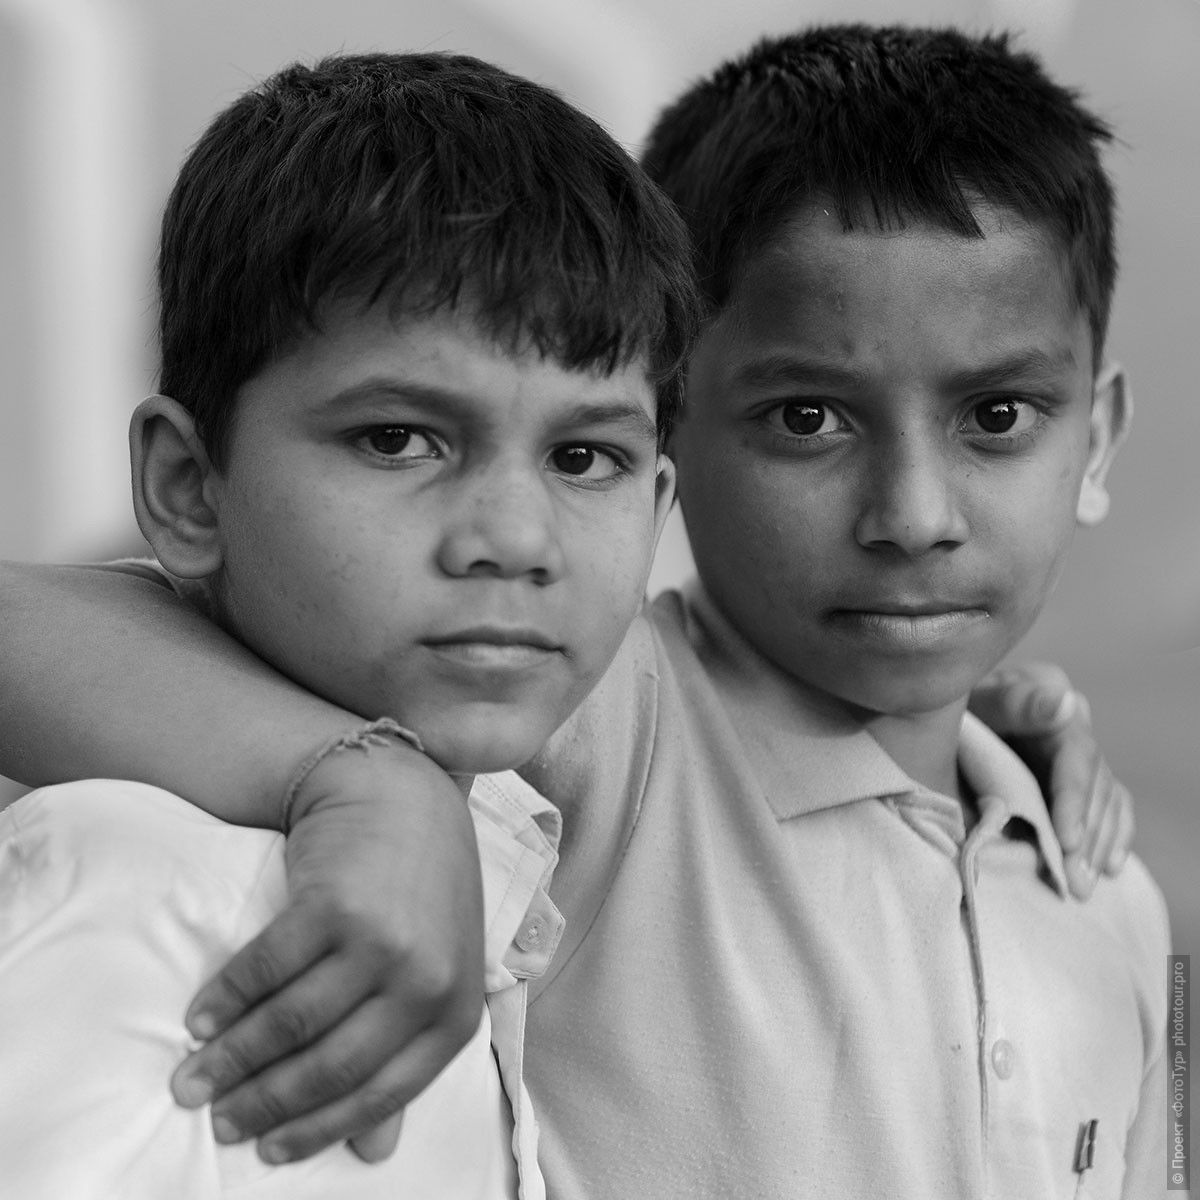 Пацаны, Орчха. Фотография мальчишек из Индии.